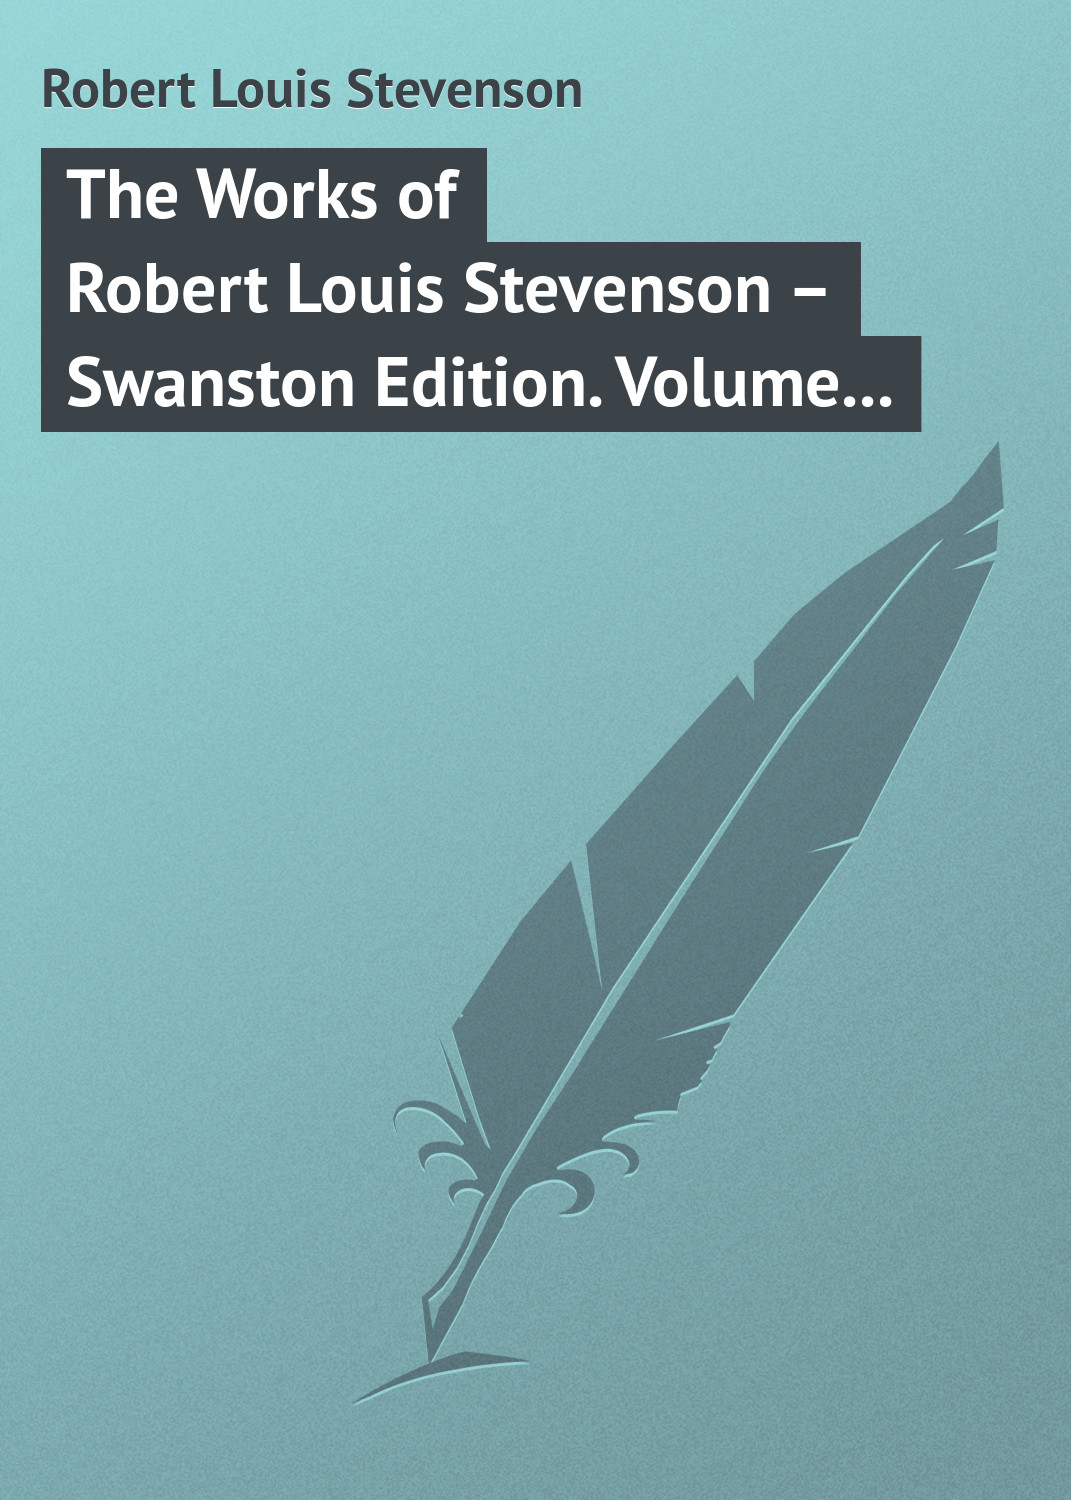 Книга The Works of Robert Louis Stevenson – Swanston Edition. Volume 18 из серии , созданная Robert Stevenson, может относится к жанру Зарубежная классика. Стоимость электронной книги The Works of Robert Louis Stevenson – Swanston Edition. Volume 18 с идентификатором 23153419 составляет 5.99 руб.